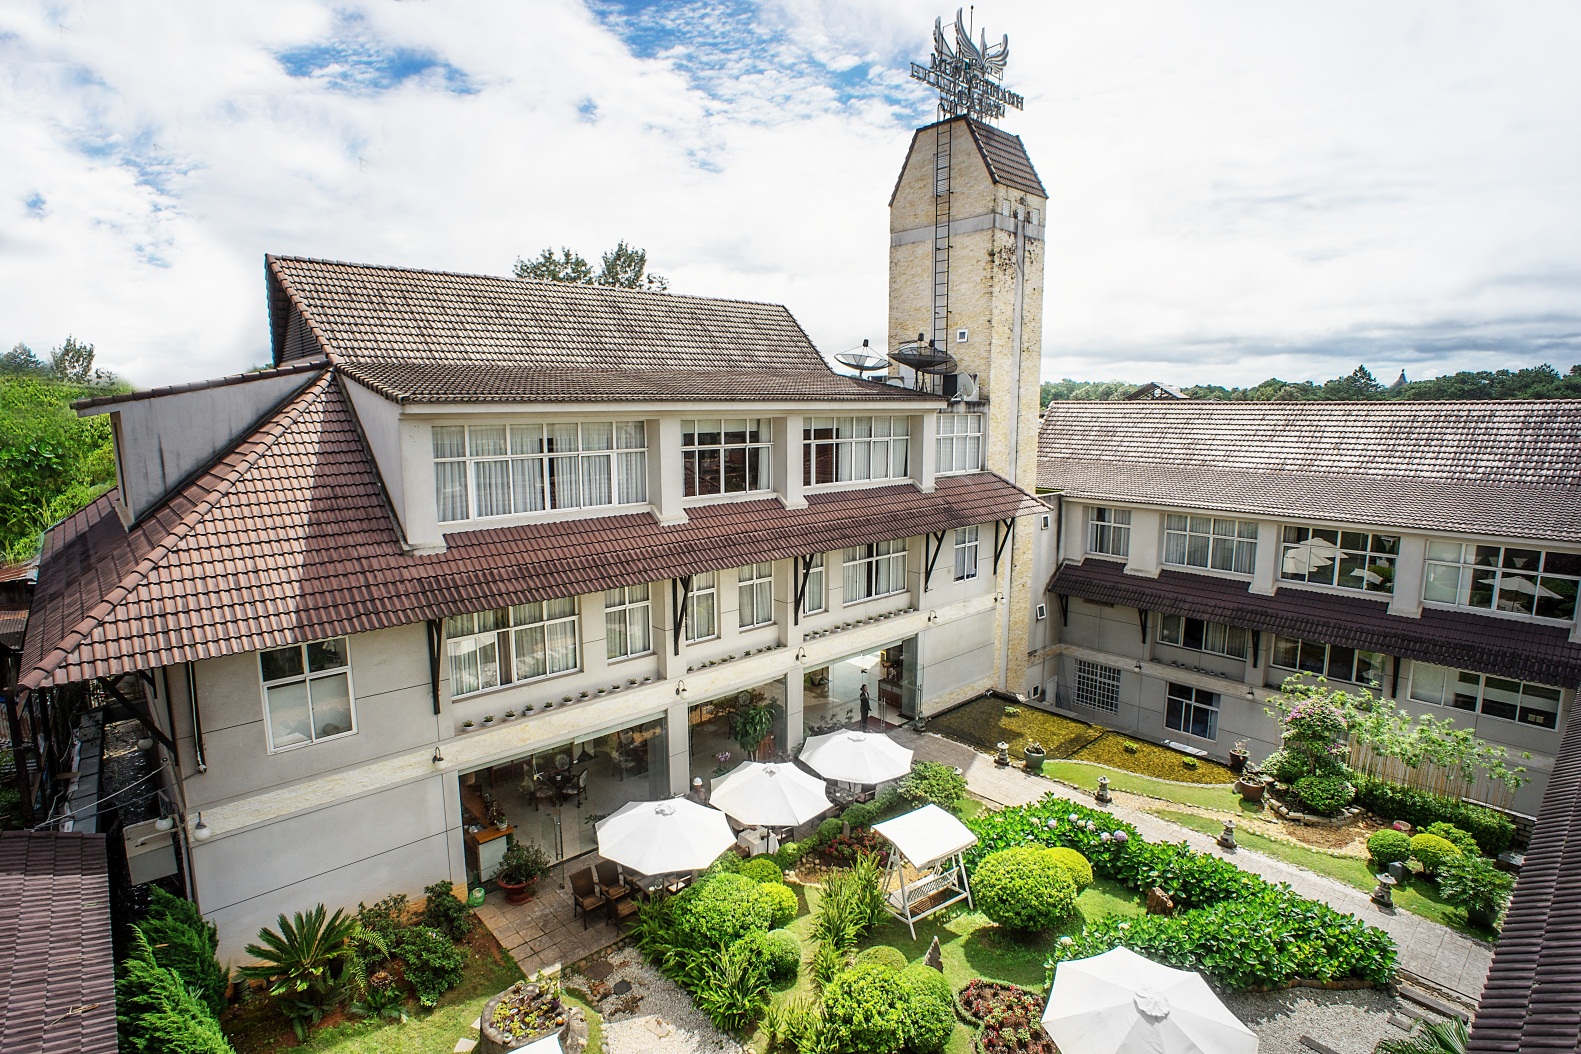 Vui trọn mùa hè với ưu đãi lên đến 70% tại khách sạn Mường Thanh - Ảnh 3.